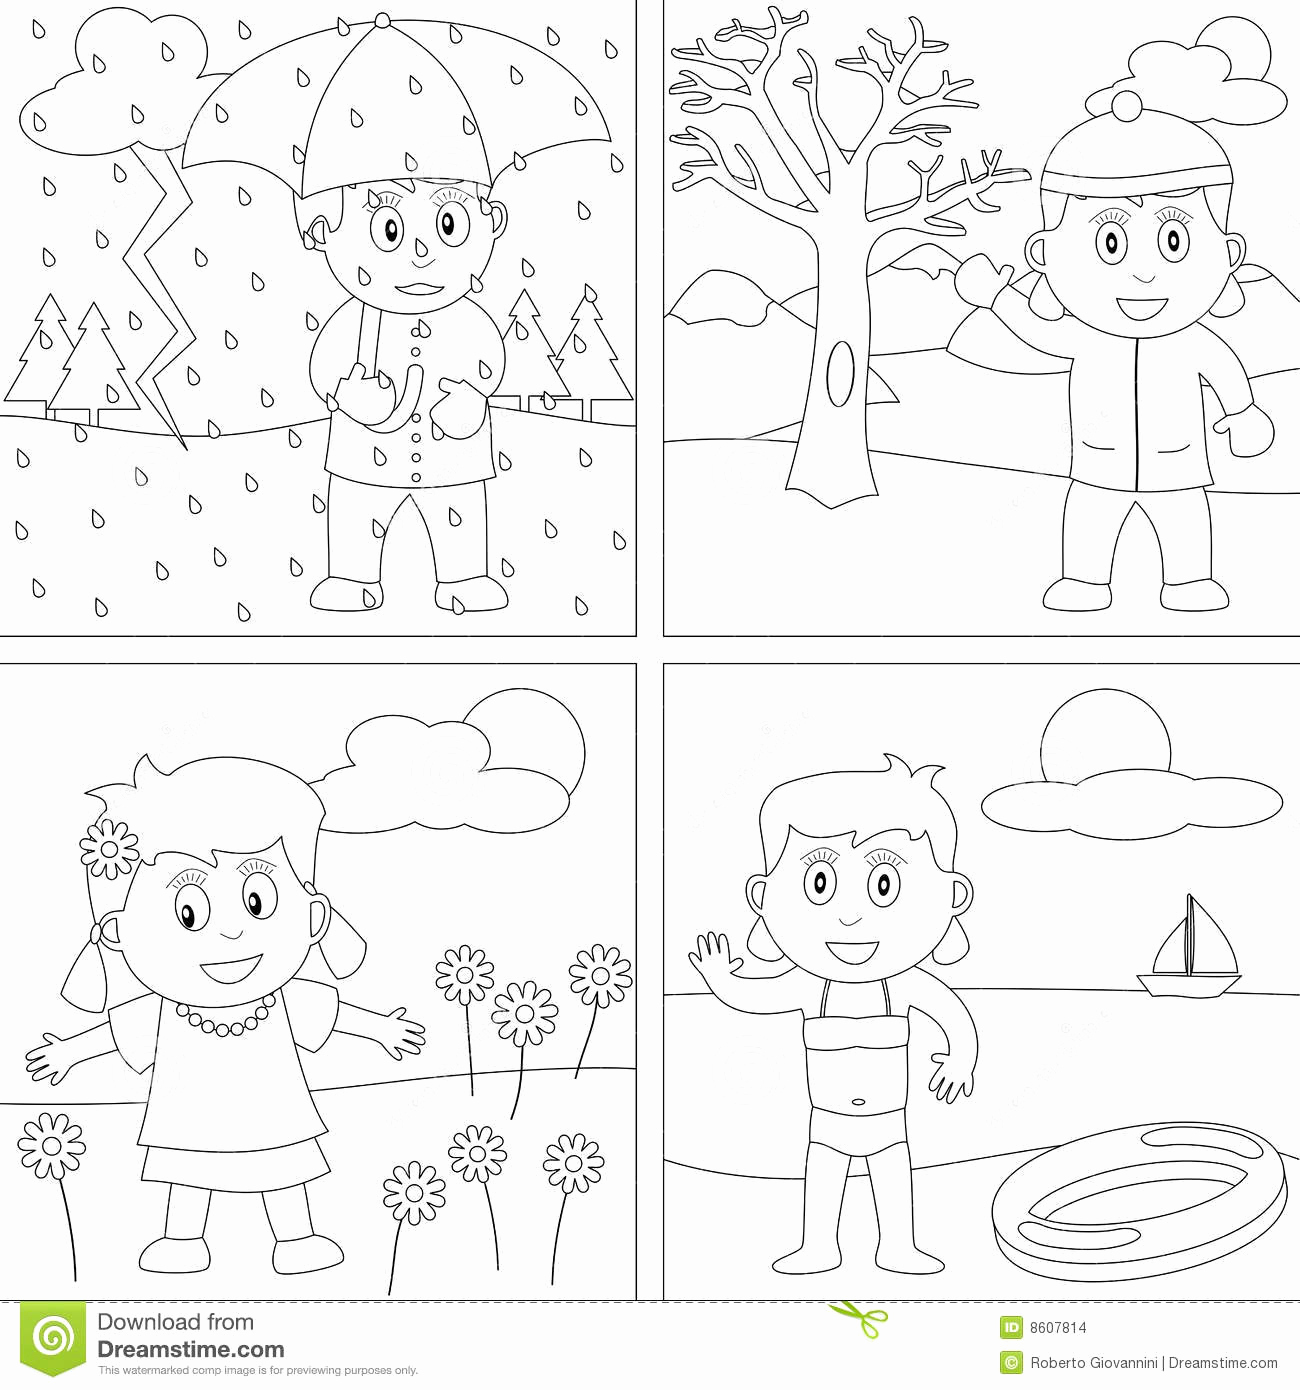 Four Seasons Kindergarten Worksheets Inspirational 9 Best Of 4 Seasons Printable Worksheets Free